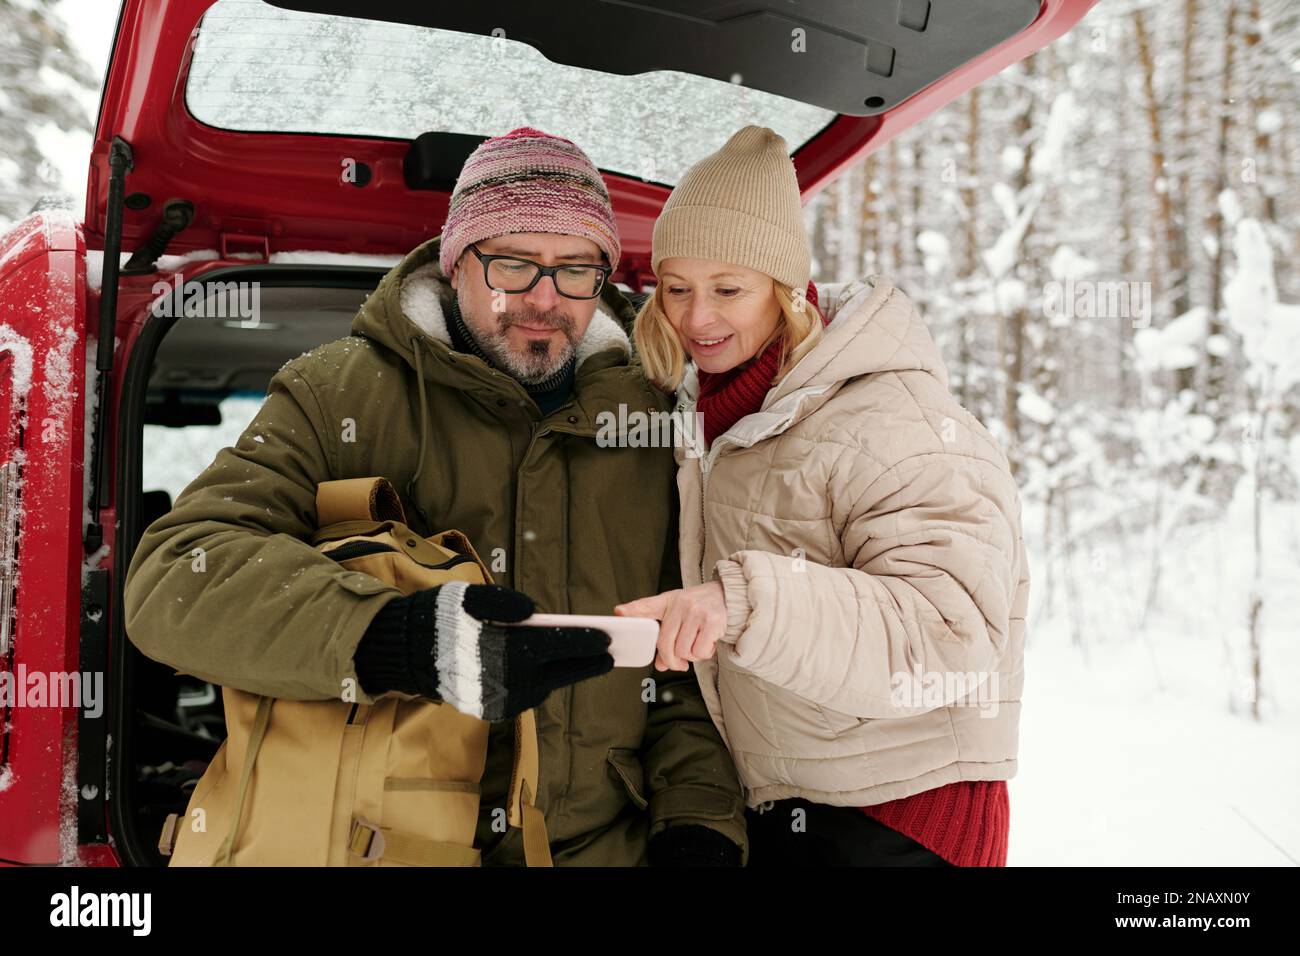 Glückliche, reife Frau, die auf den Bildschirm des Smartphones zeigt, das ihr Mann in der Hand hält, während sie ihm während der Winterreise ein neugieriges Foto zeigt Stockfoto